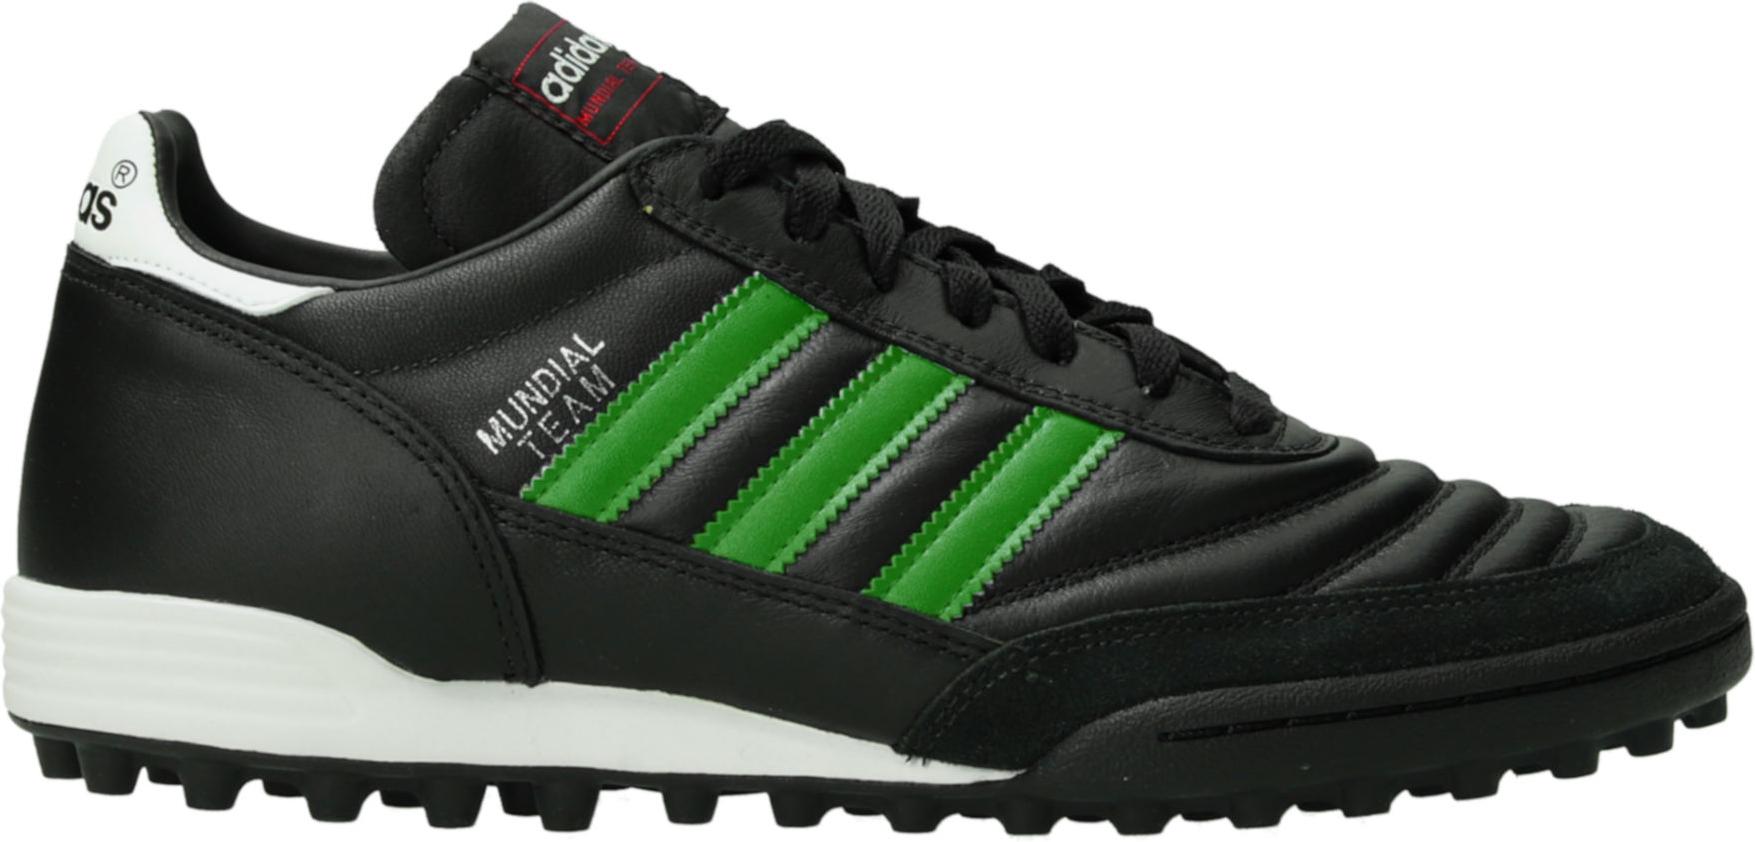 Kopačky adidas  Mundial Team TF Green Stripes Schwarz černá